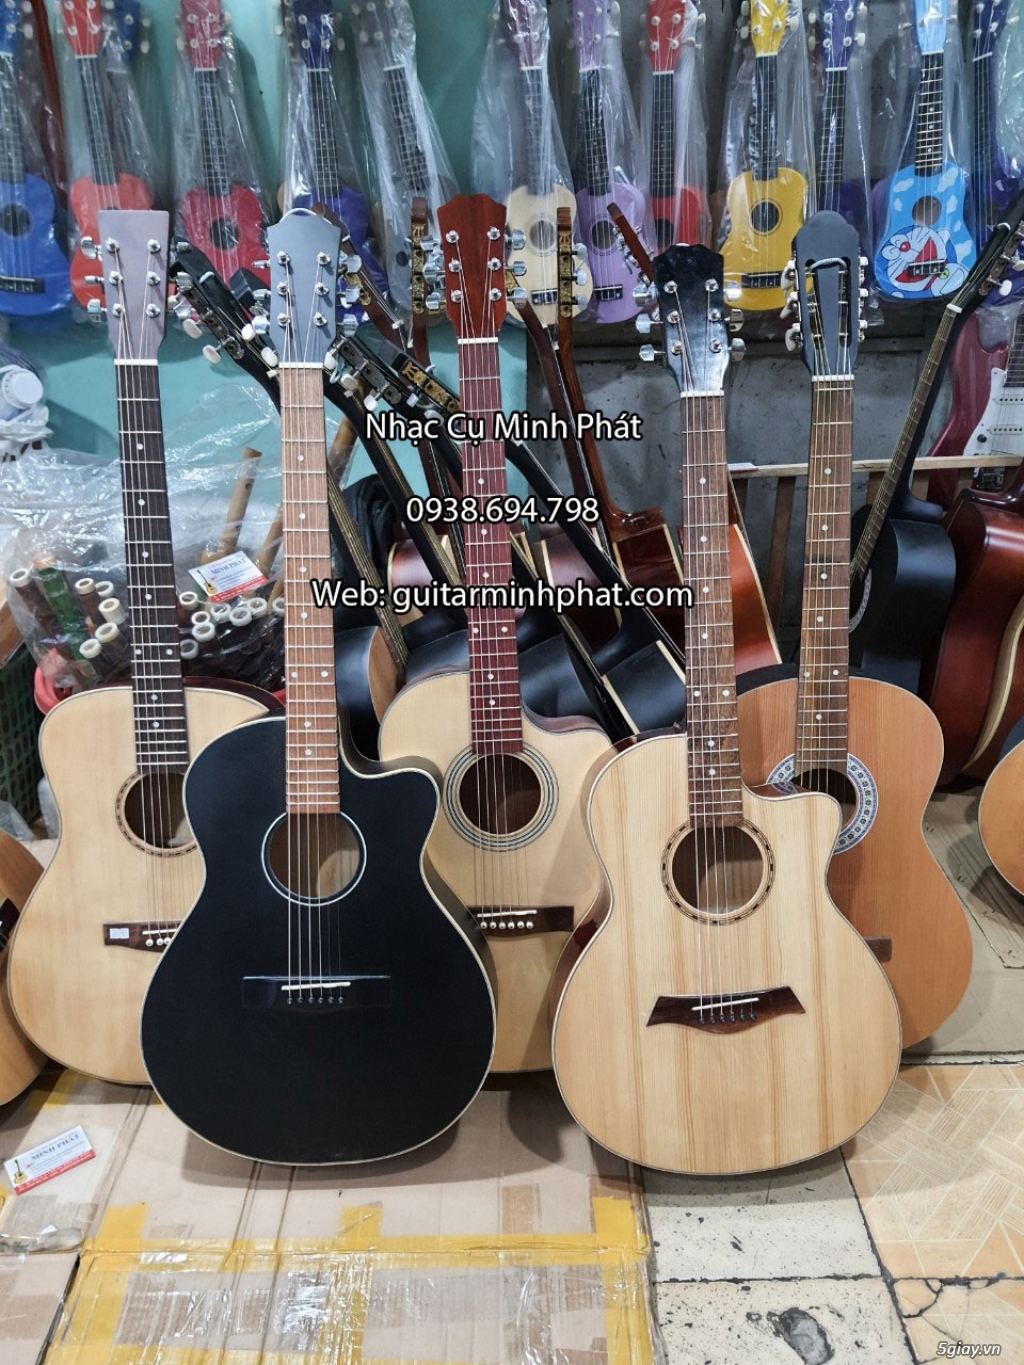 Bán đàn guitar, ukulele, kalimba giá rẻ ở quận Gò Vấp TPHCM